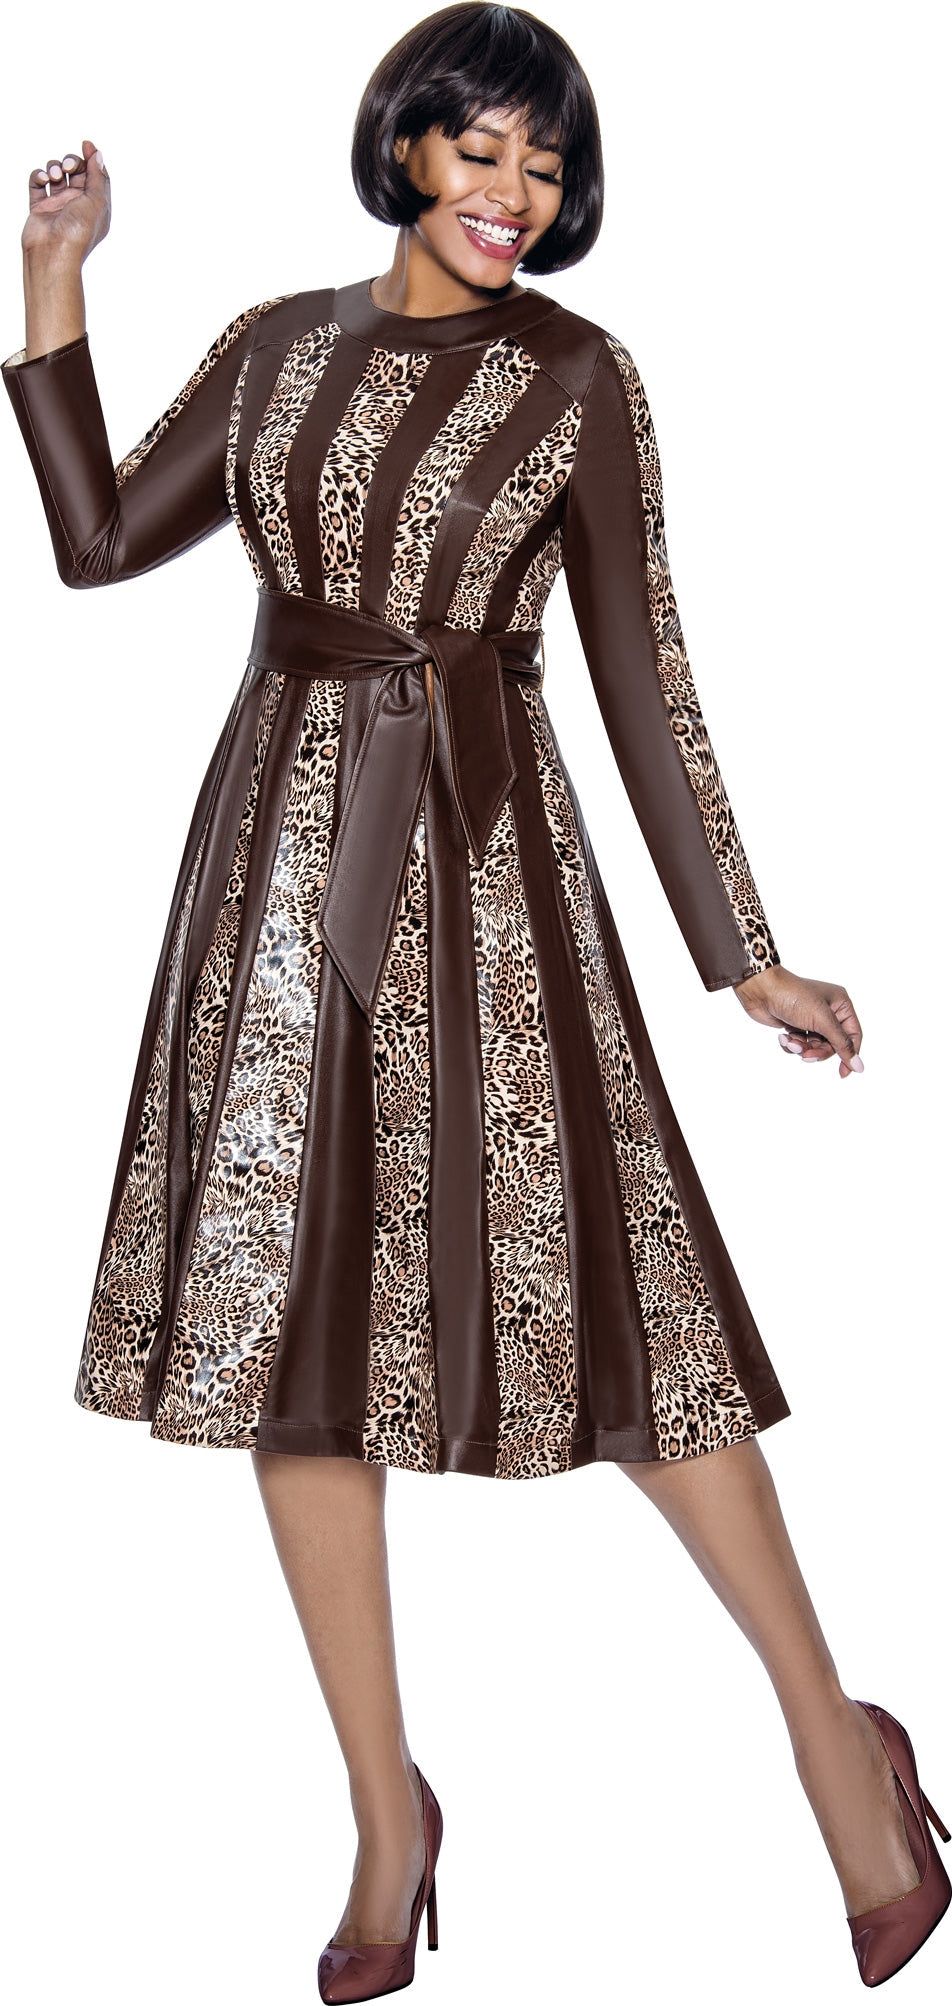 Terramina Church Dress 7035C-Brown - Church Suits For Less